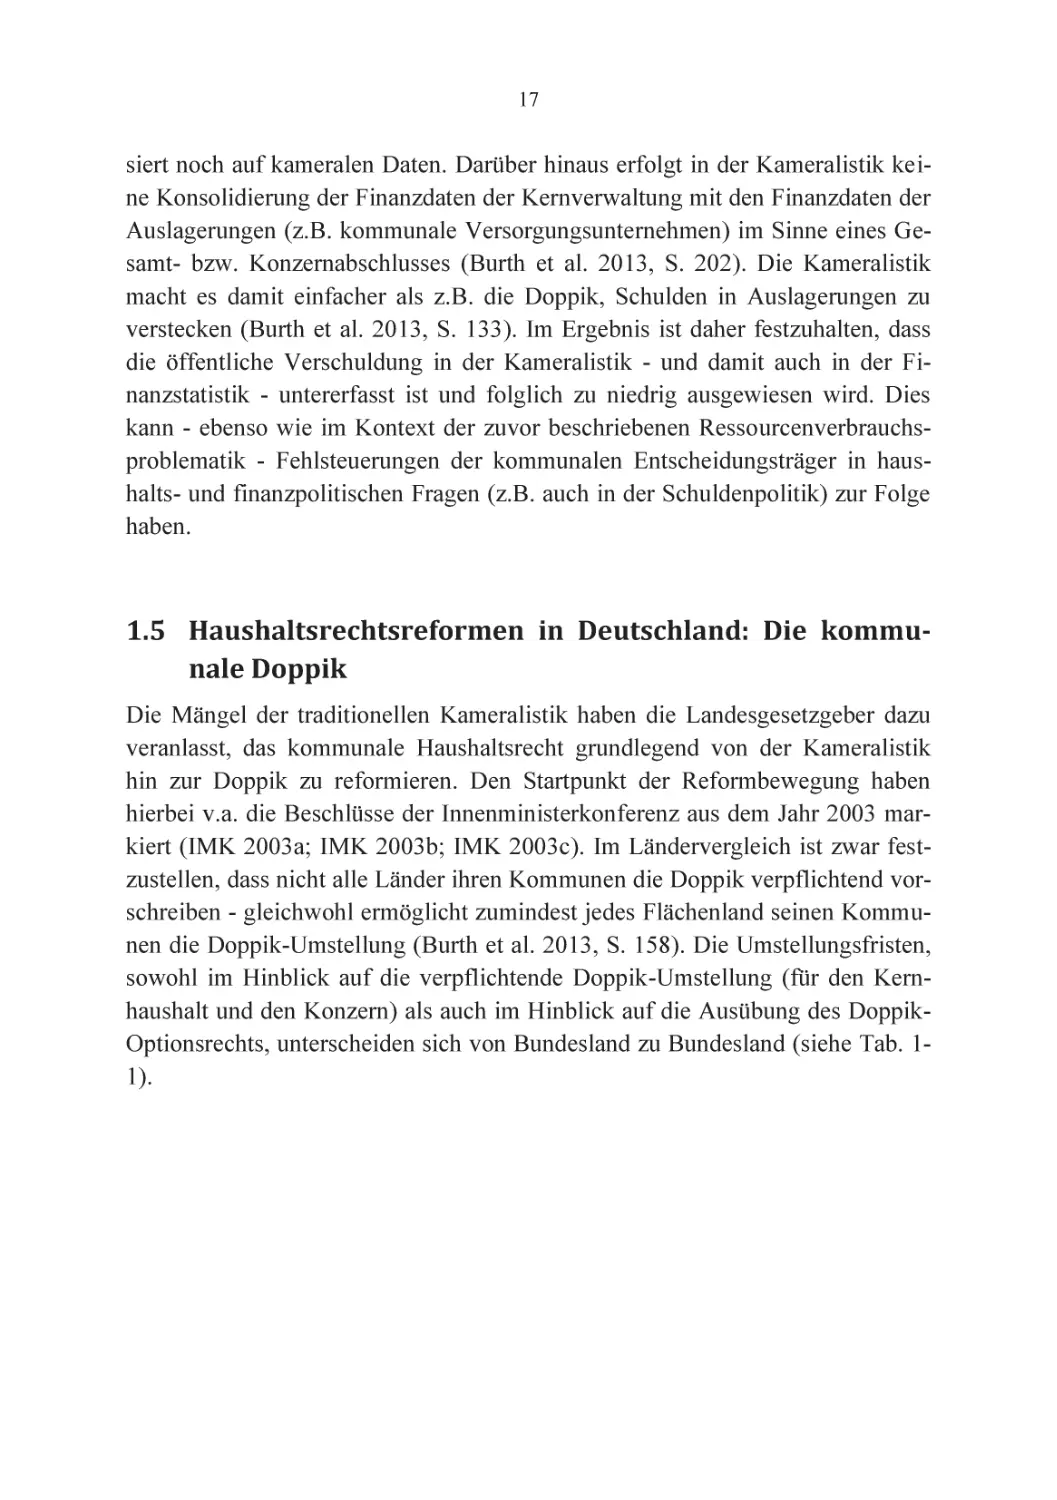 1.5 Haushaltsrechtsreformen in Deutschland